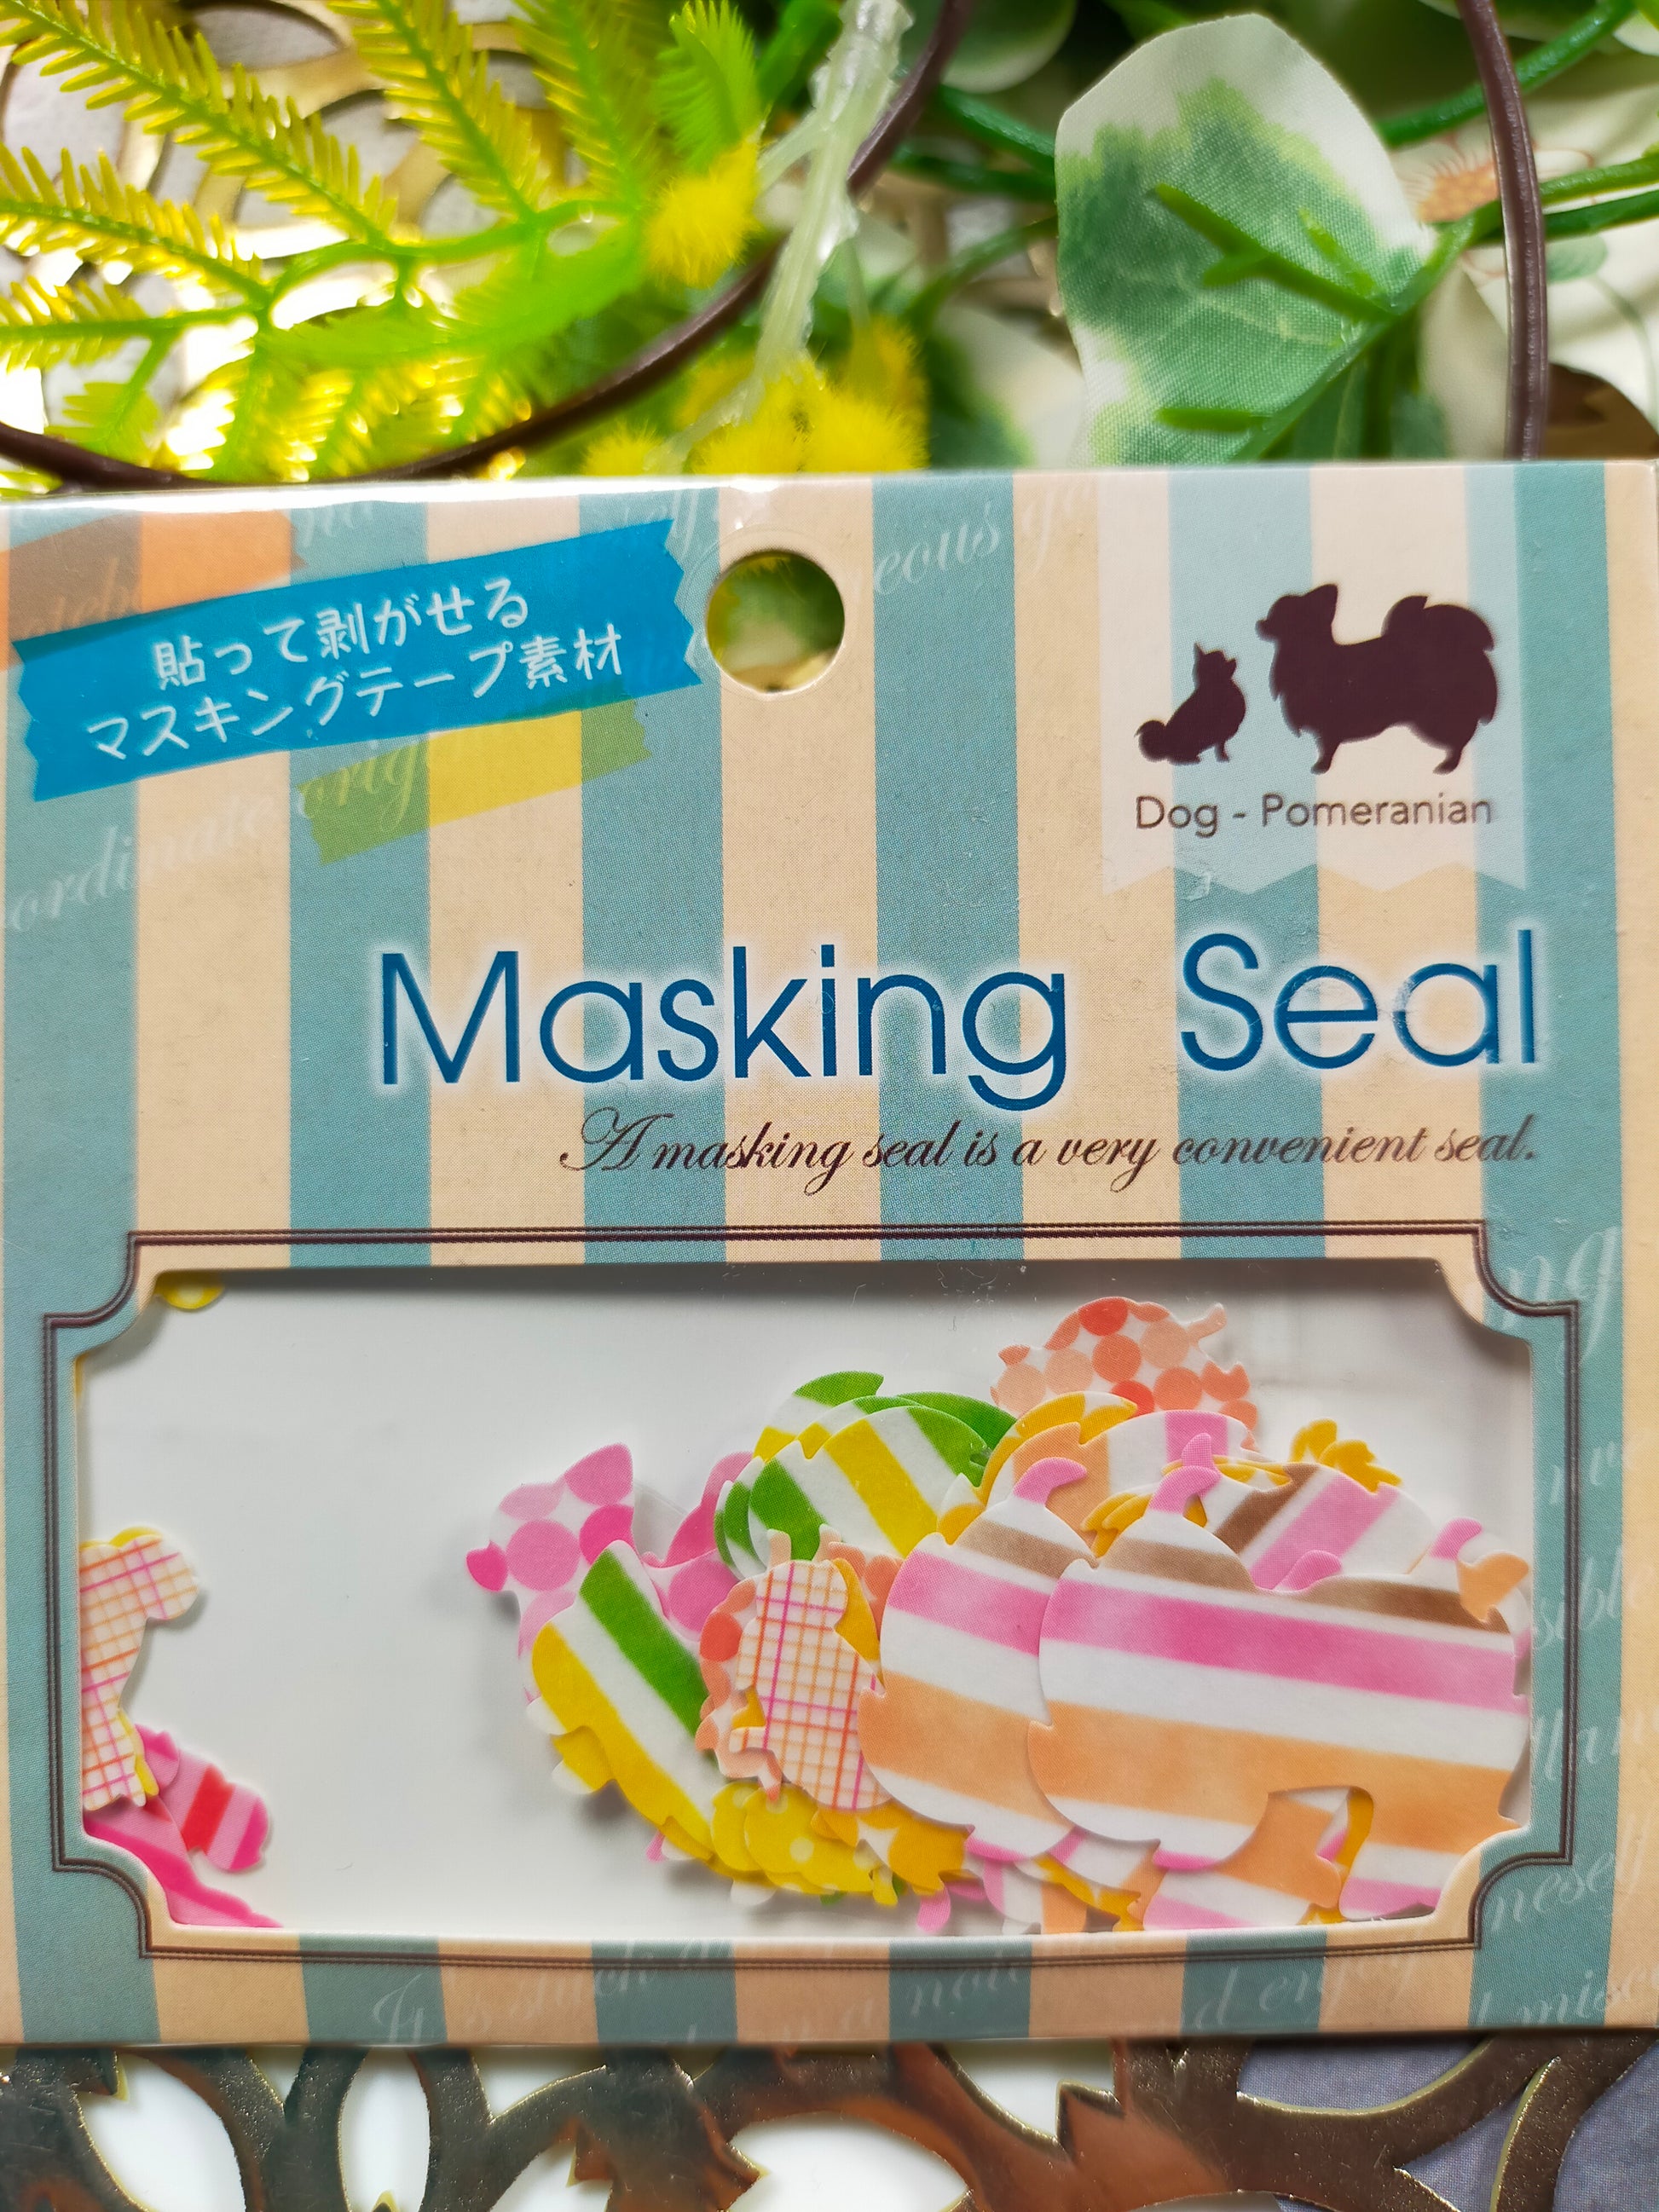 Masking Seal Dog 10designs*4pieces,Eagle Japan _ Labrador Retriever / Golden Retriever / Scottish Terrier / Pomeranian